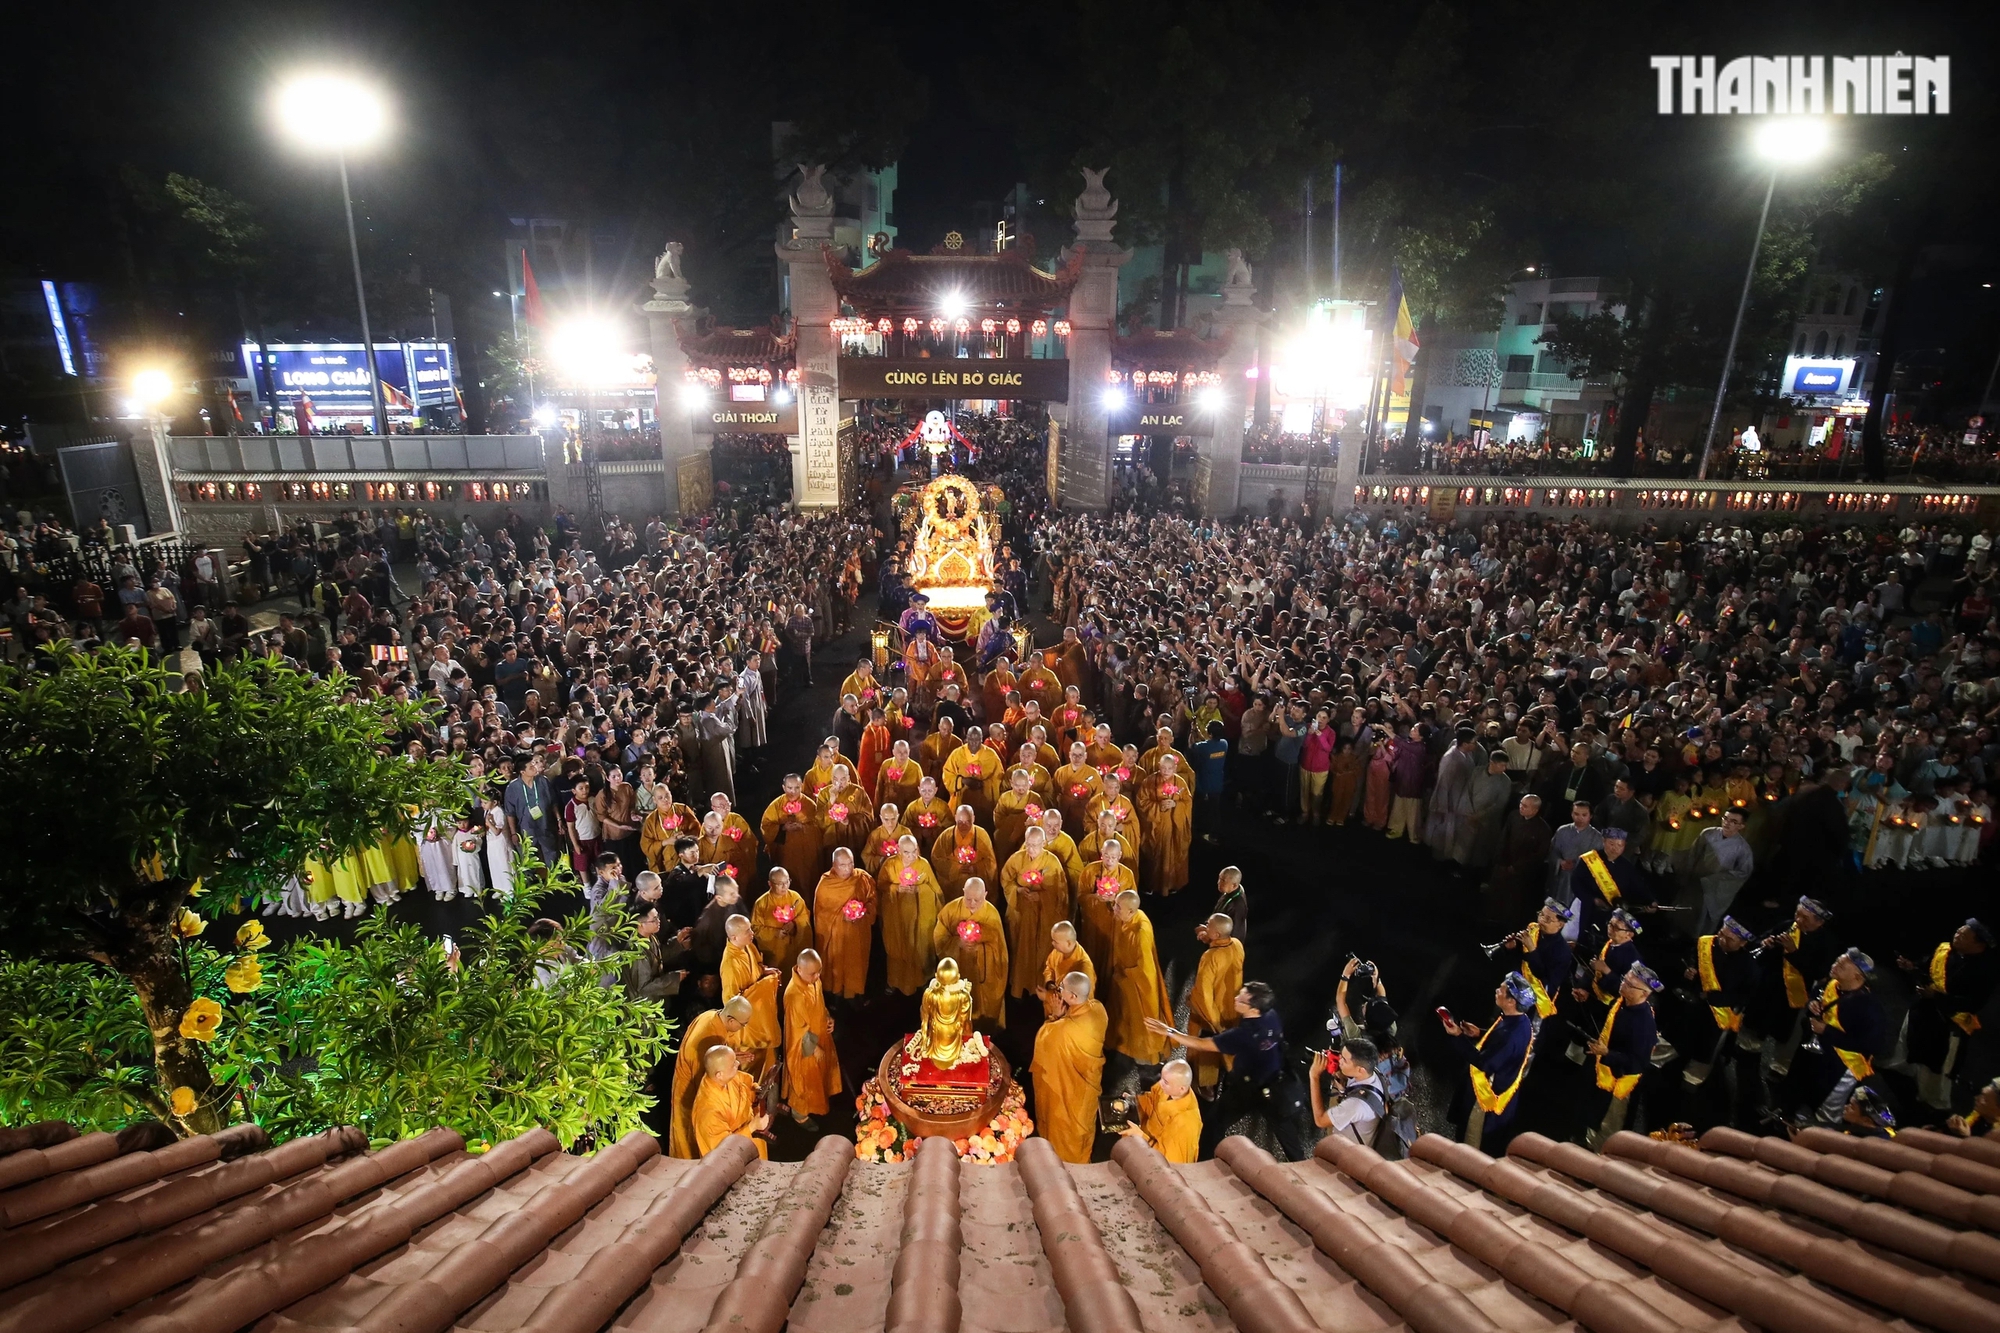 Chư tôn đức Tăng Ni và hàng ngàn Phật tử trang nghiêm cung rước Đức Phật theo lộ trình từ Sư Vạn Hạnh (tổ đình Ấn Quang) - Ngô Gia Tự - Lê Hồng Phong - Đường 3/2, vào tam quan Việt Nam Quốc Tự, nơi lễ đài chính của Phật giáo TP.HCM